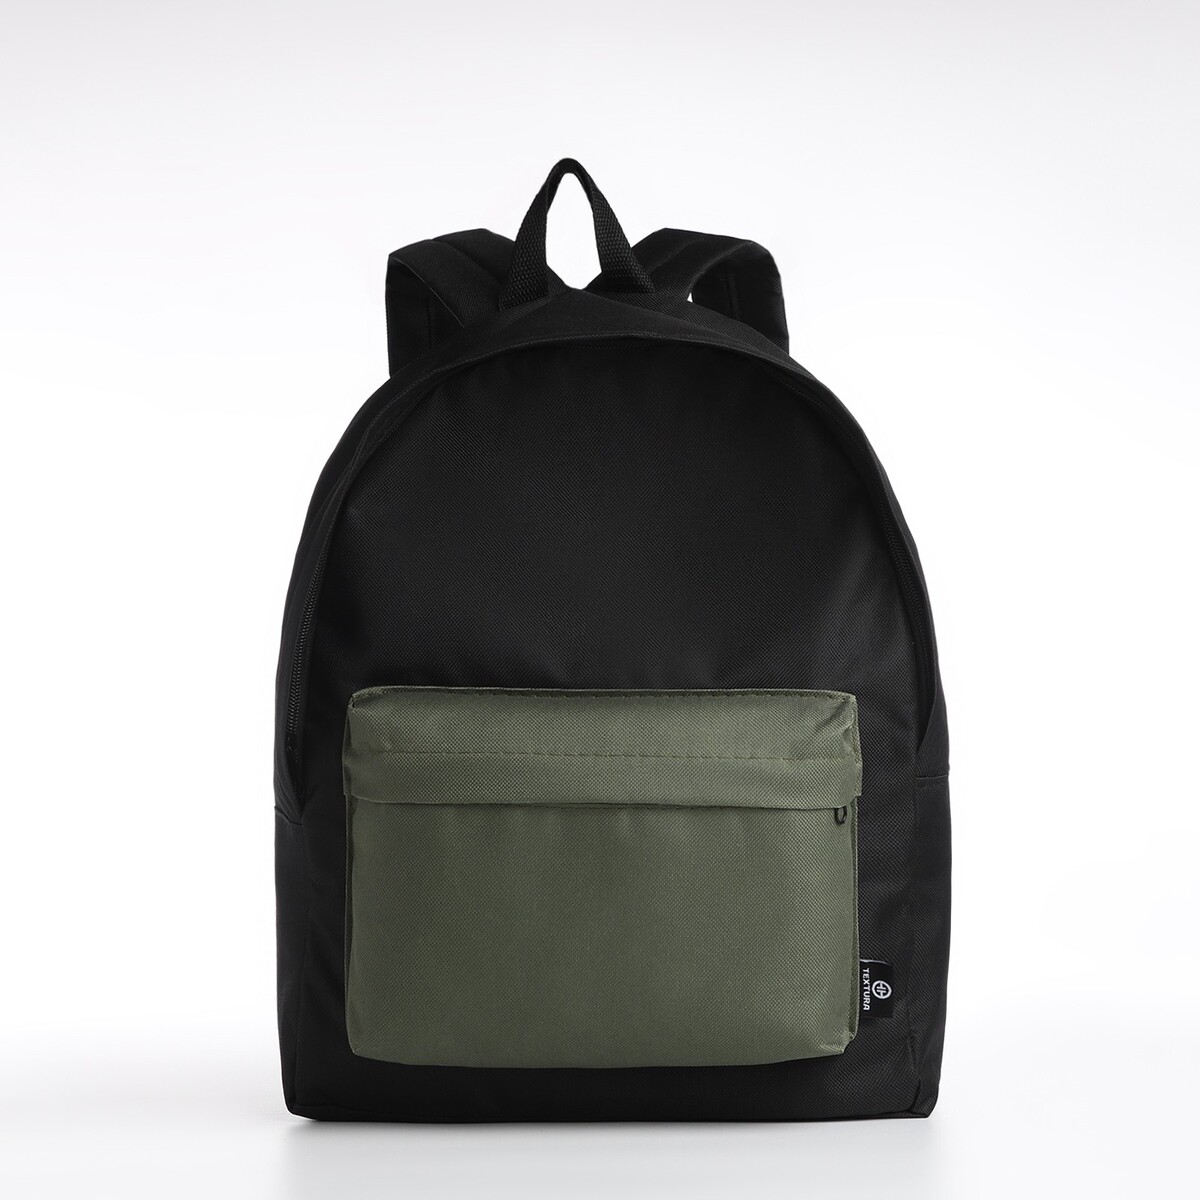 Спортивный рюкзак textura, 20 литров, цвет черный/хаки рюкзак кенгуру коала new хаки